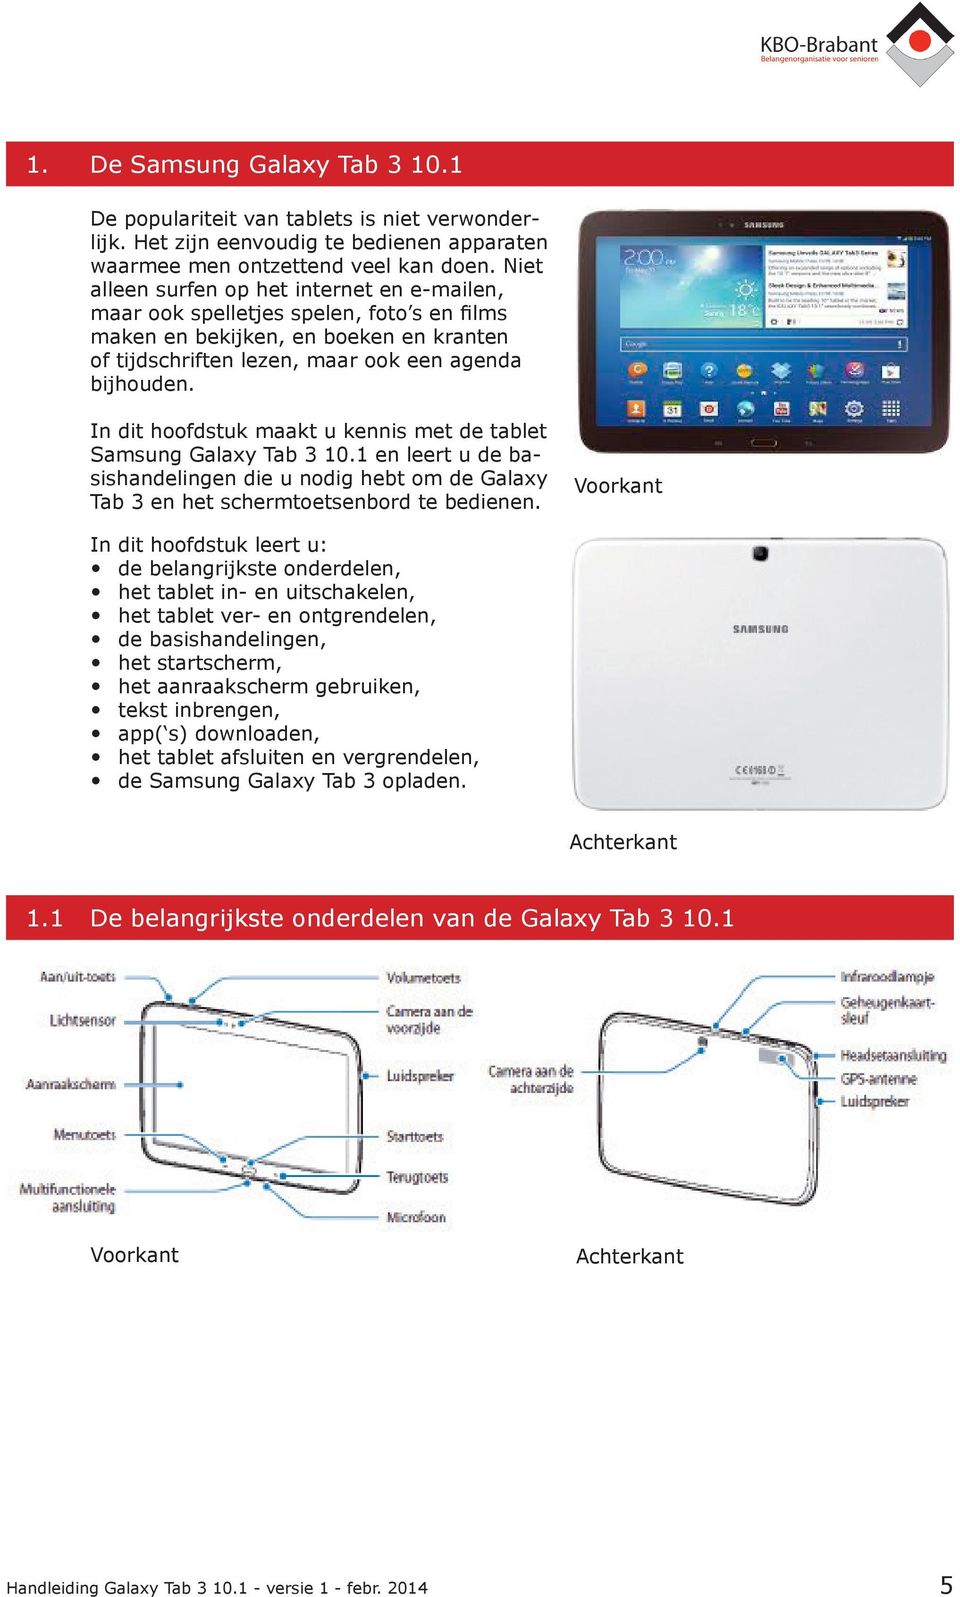 In dit hoofdstuk maakt u kennis met de tablet Samsung Galaxy Tab 3 10.1 en leert u de basishandelingen die u nodig hebt om de Galaxy Tab 3 en het schermtoetsenbord te bedienen.